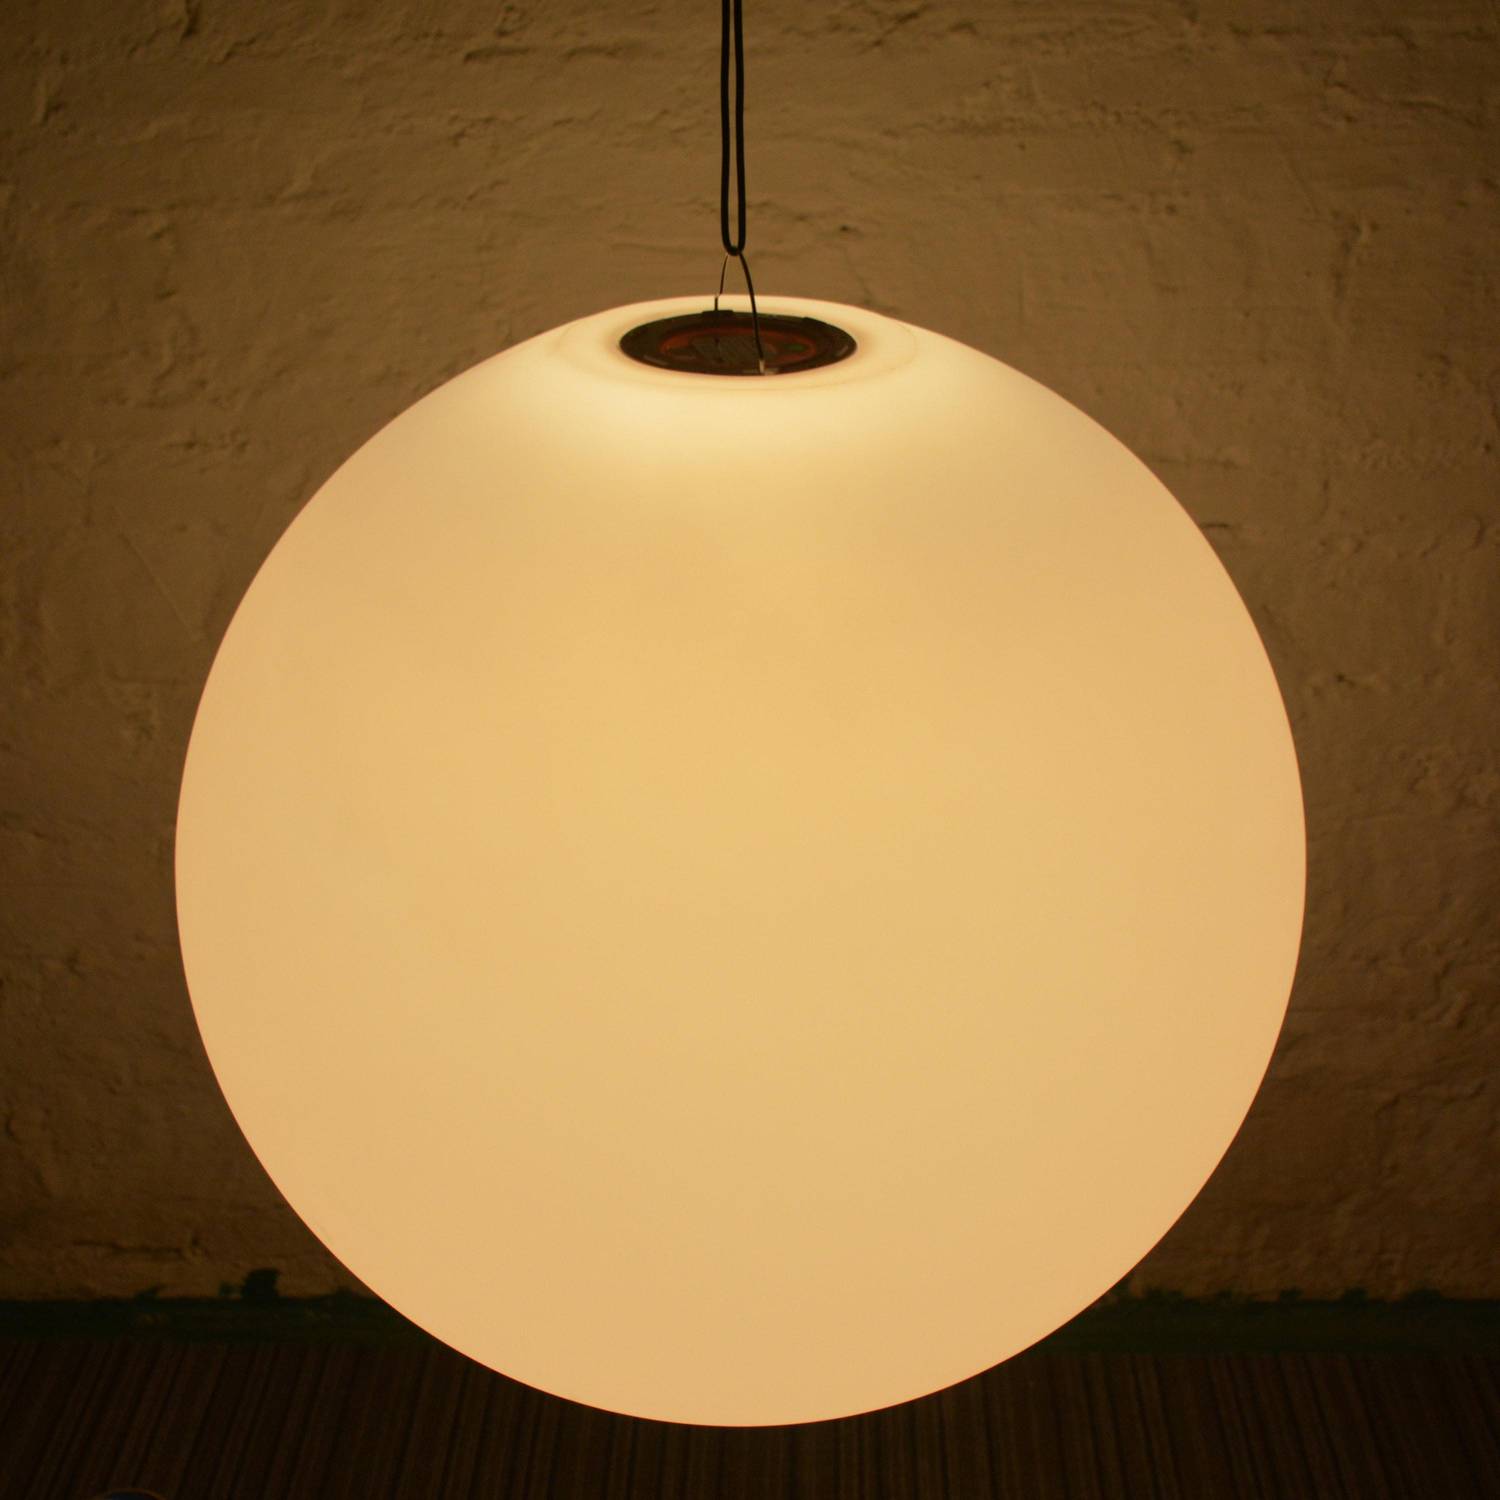 LED-Kugel 60cm - Dekorative Leuchtkugel, Ø60cm, warmweiß, mit Fernbedienung Photo5